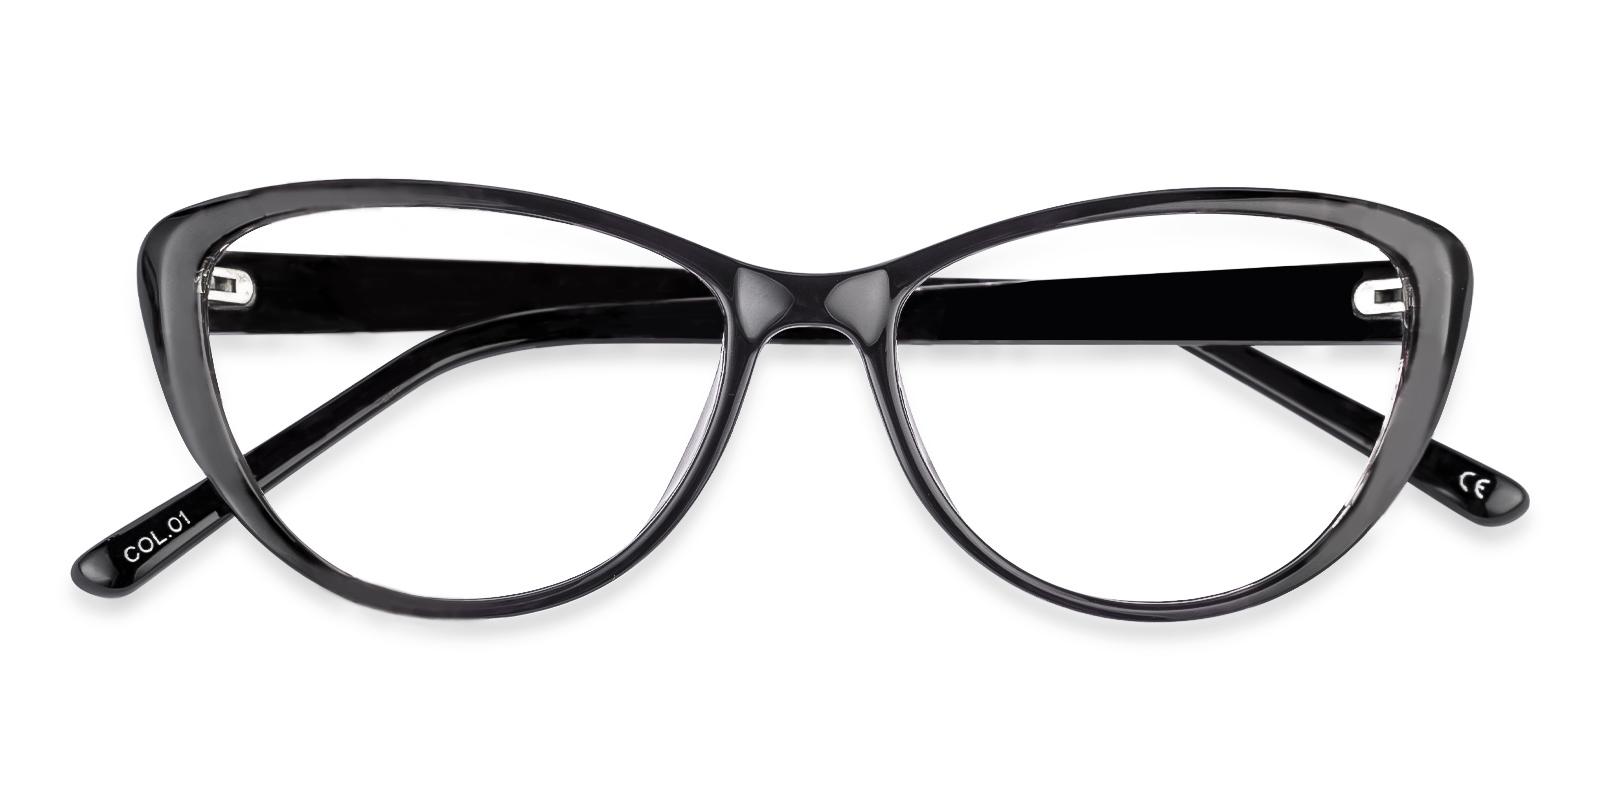 Memento Black Acetate Eyeglasses , UniversalBridgeFit Frames from ABBE Glasses